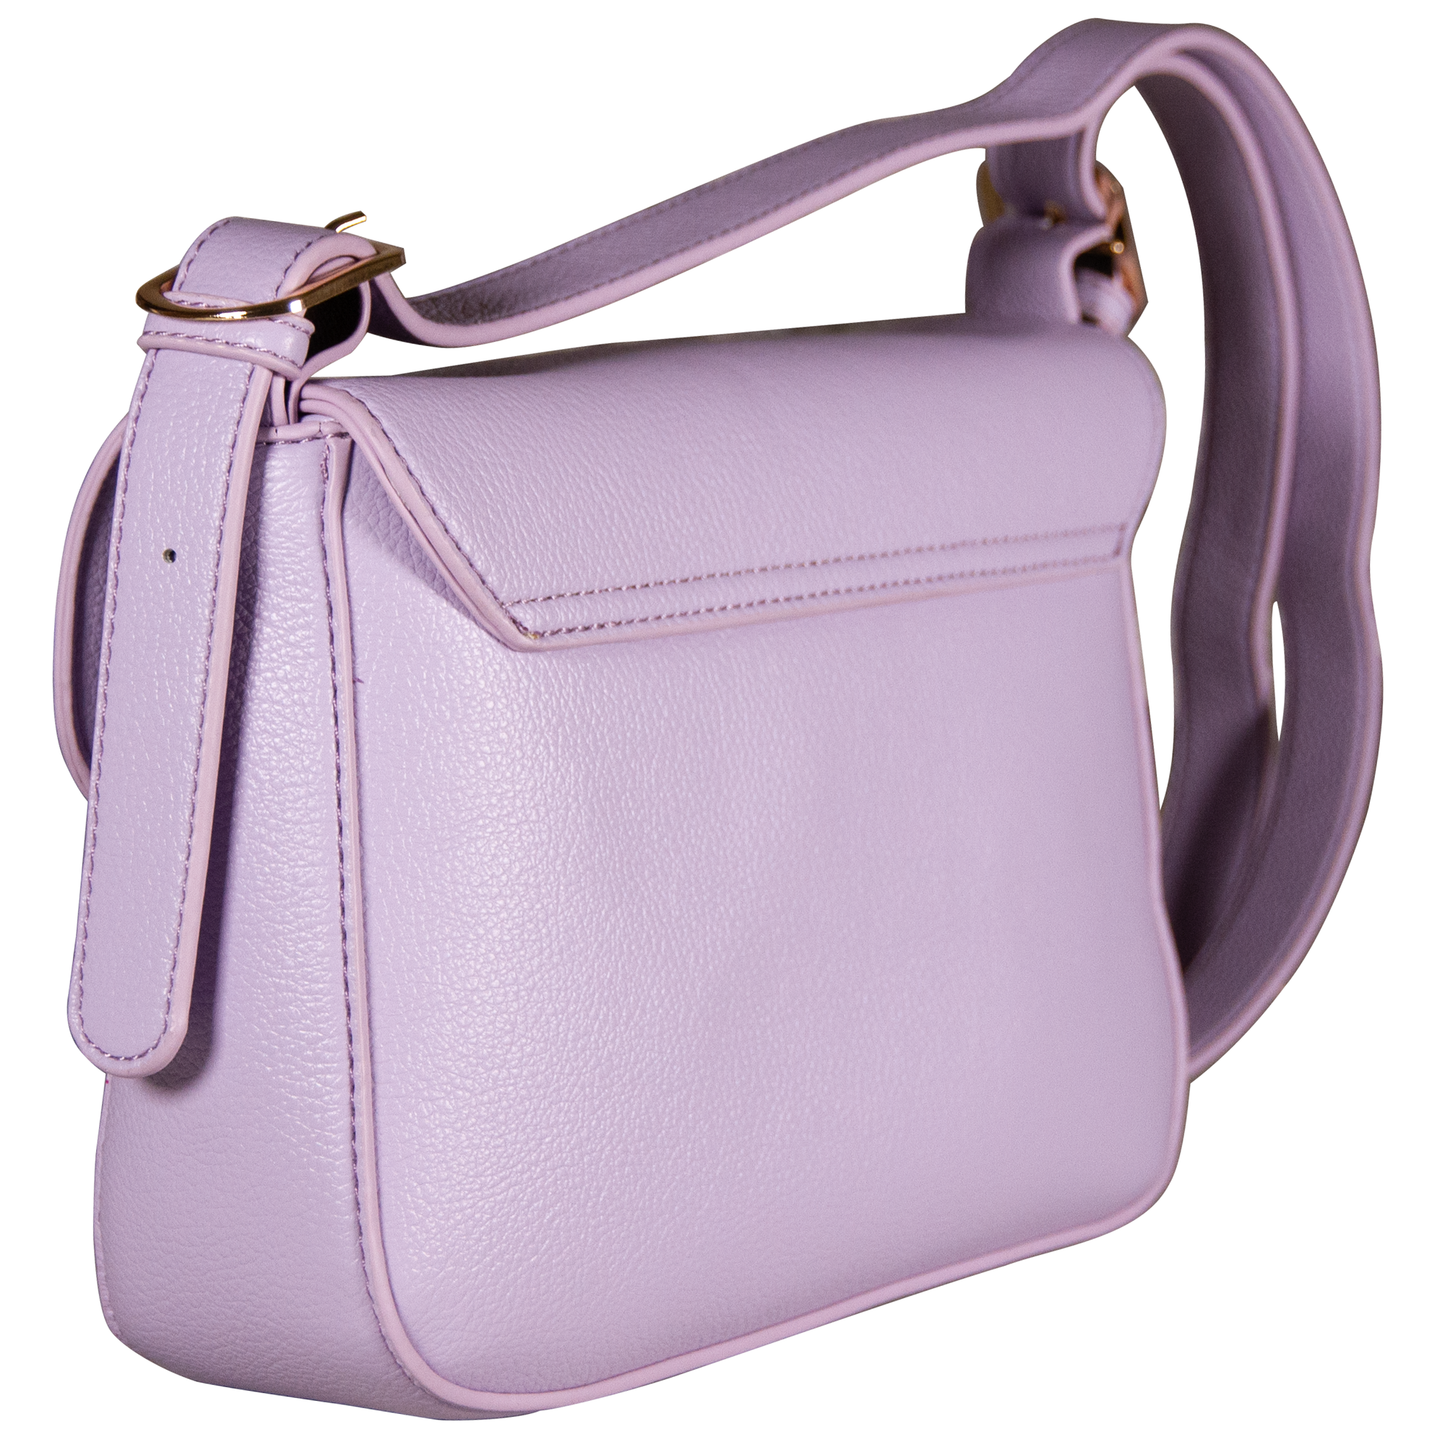 Z8KS Women’s Handbag - Purple